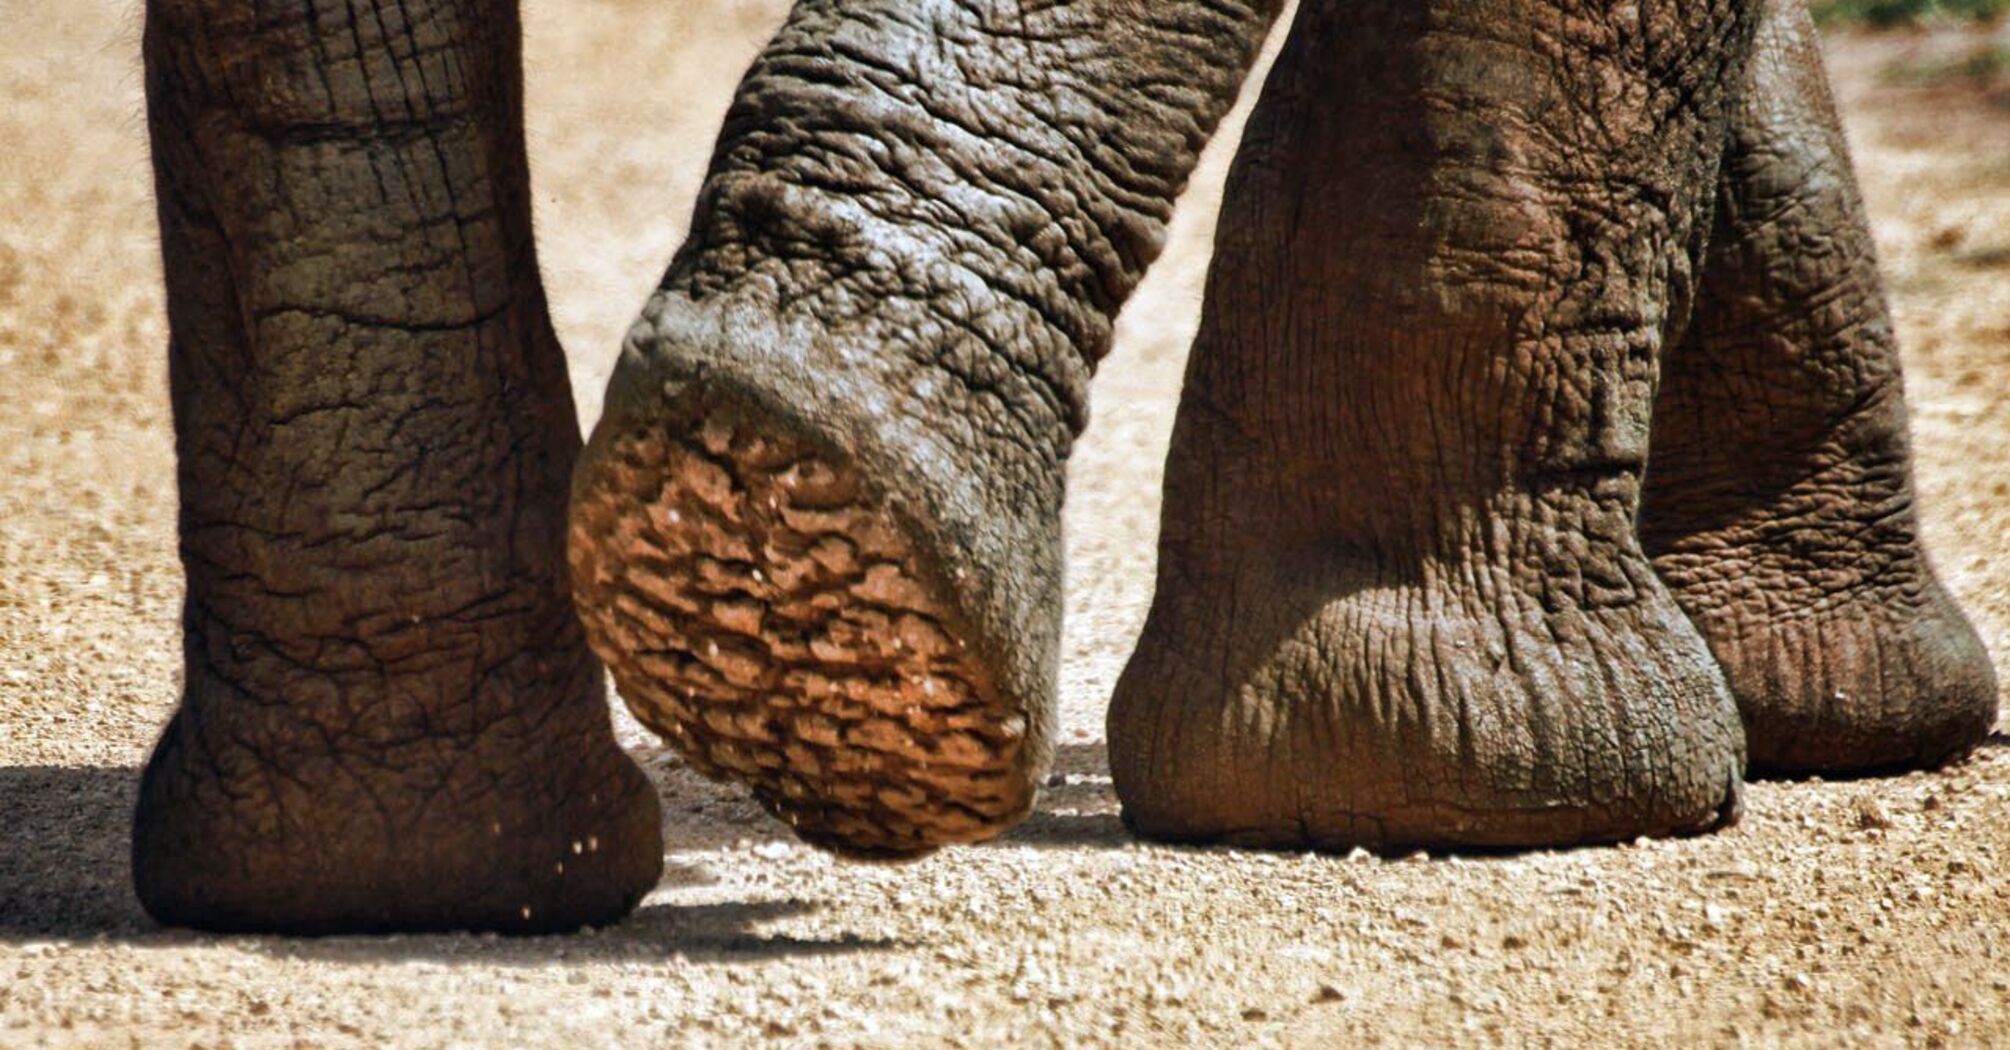 Elephants "hear" with their feet